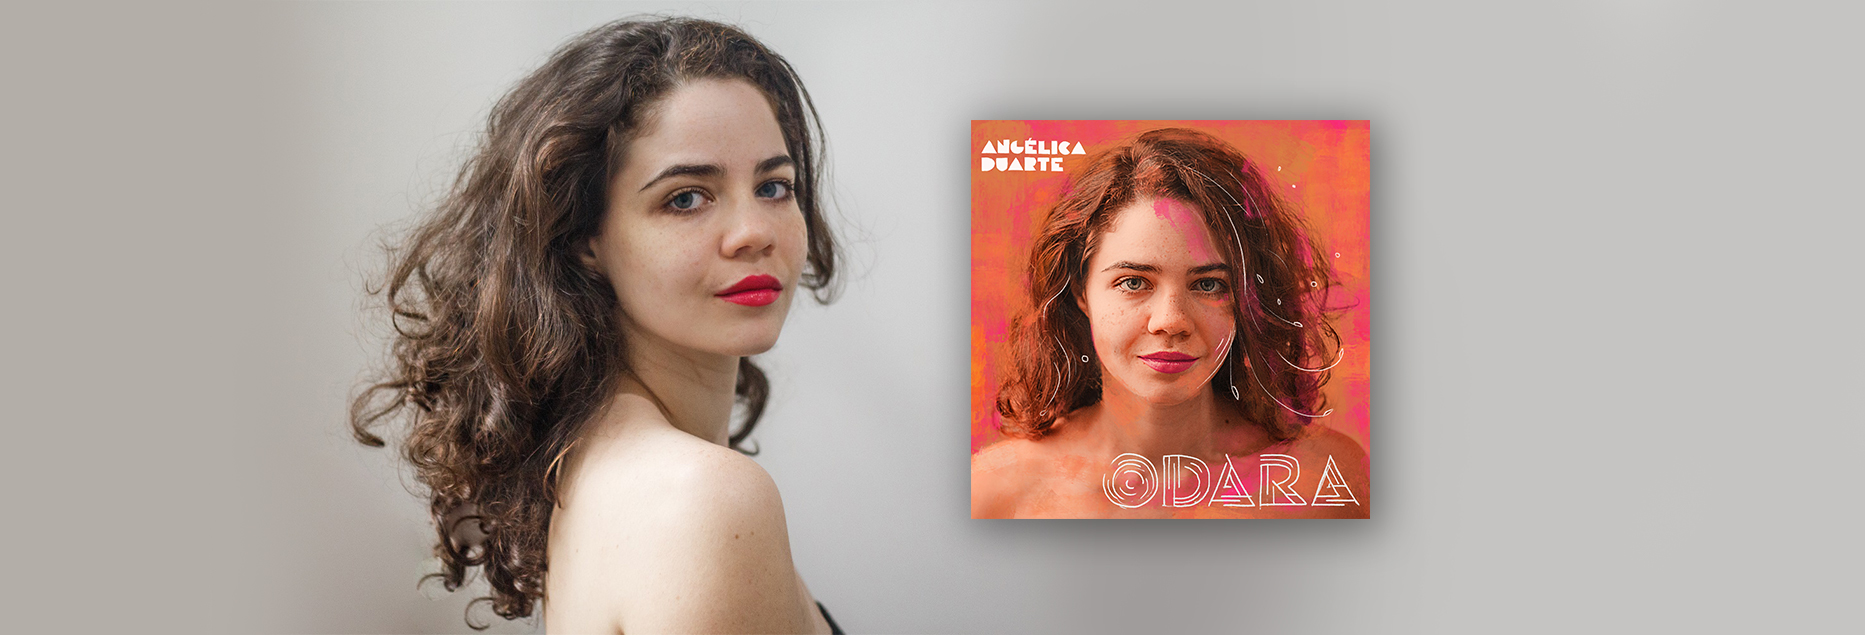 Angélica Duarte faz viagem pessoal pela obra de Caetano Veloso no EP “Odara”